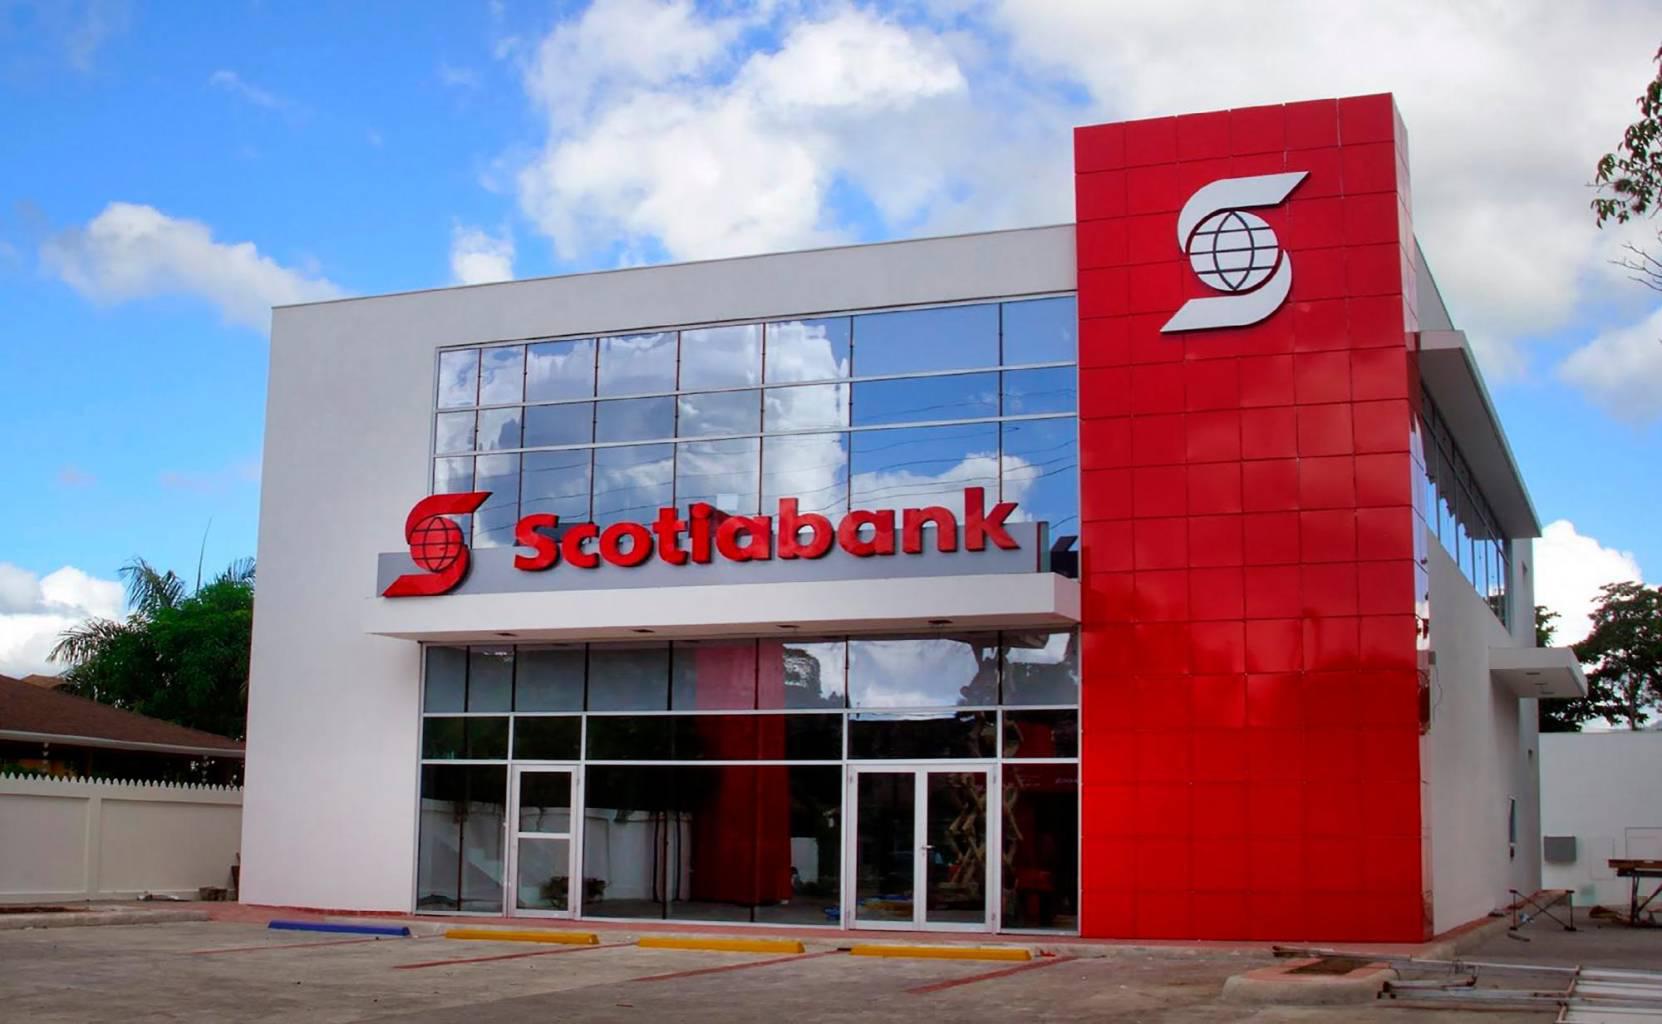 Cliente denuncia maltrato en Scotiabank